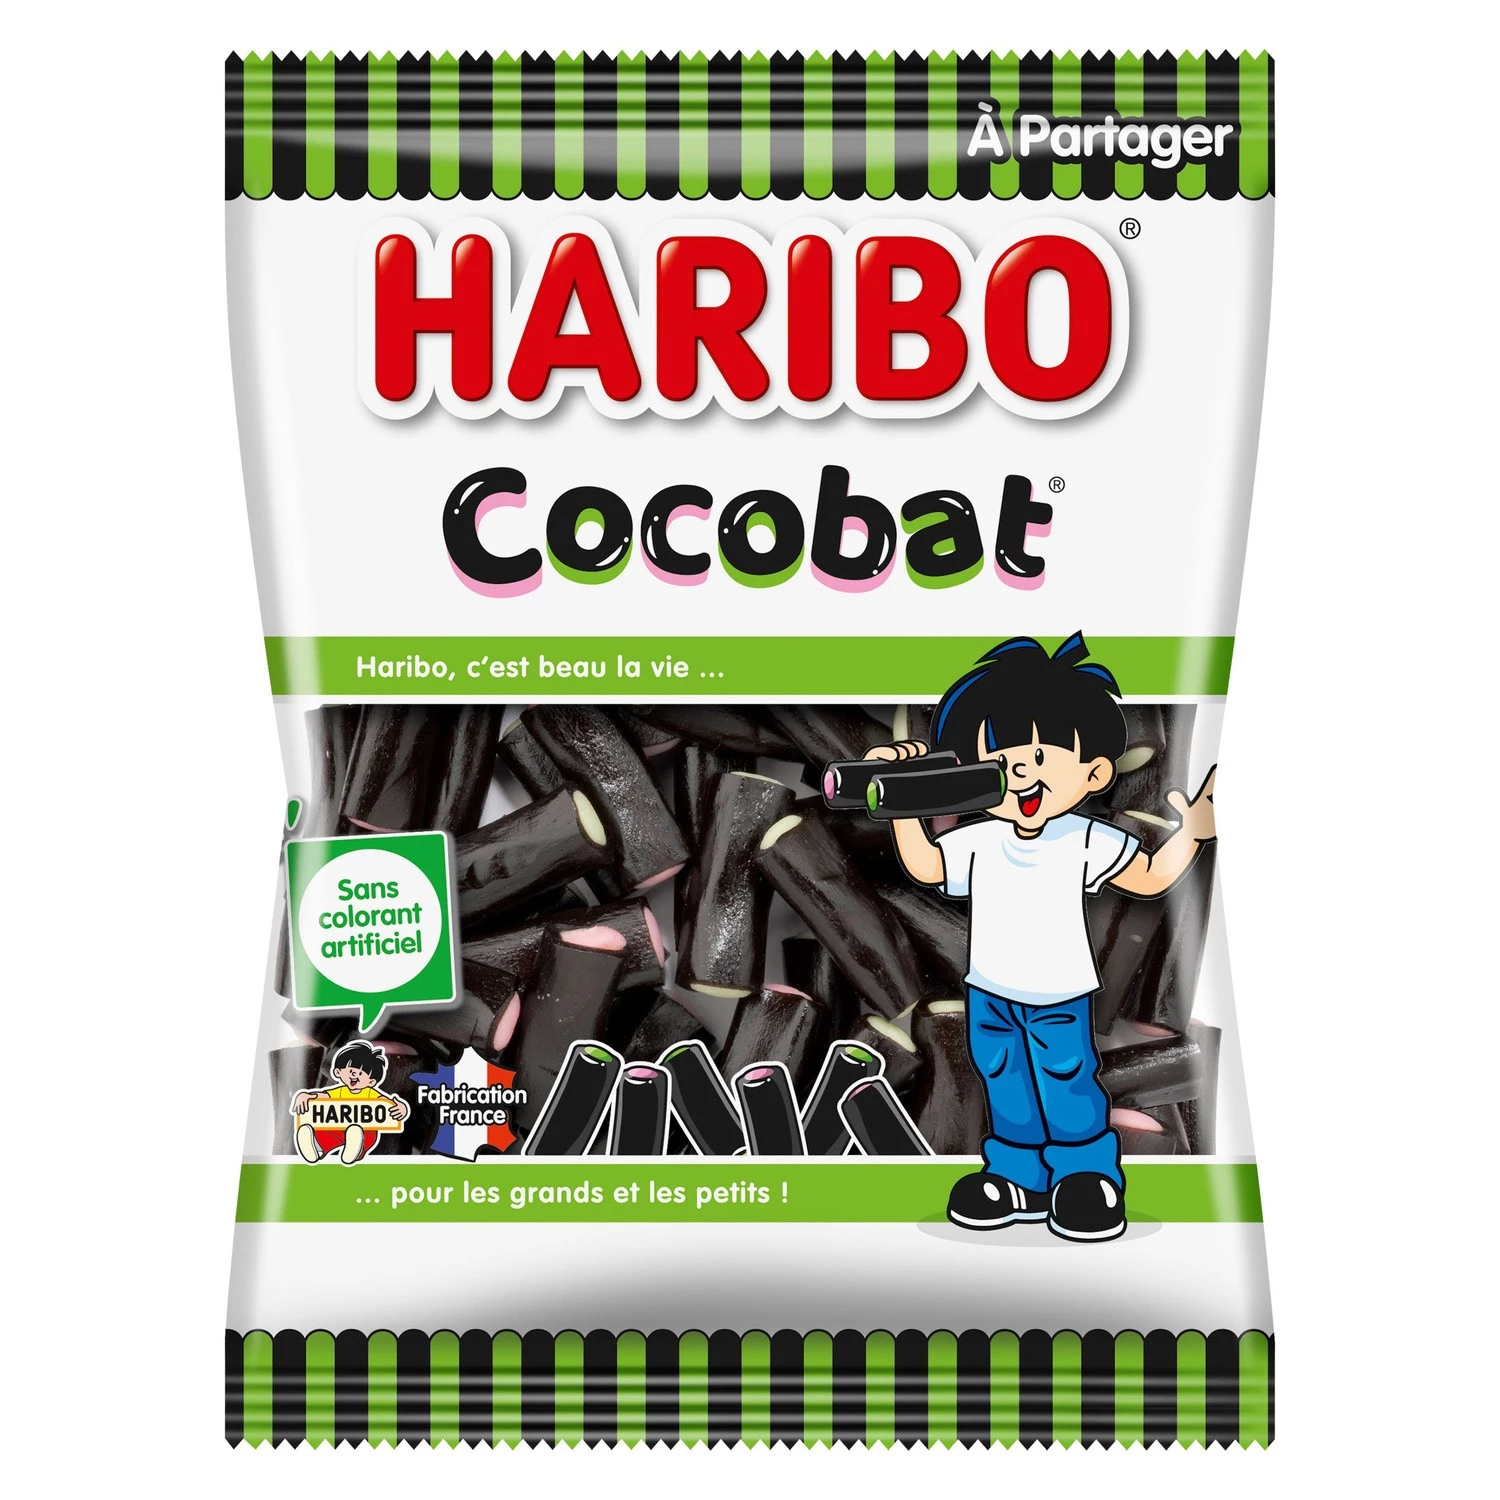 Cocobat-snoepjes; 300g - HARIBO